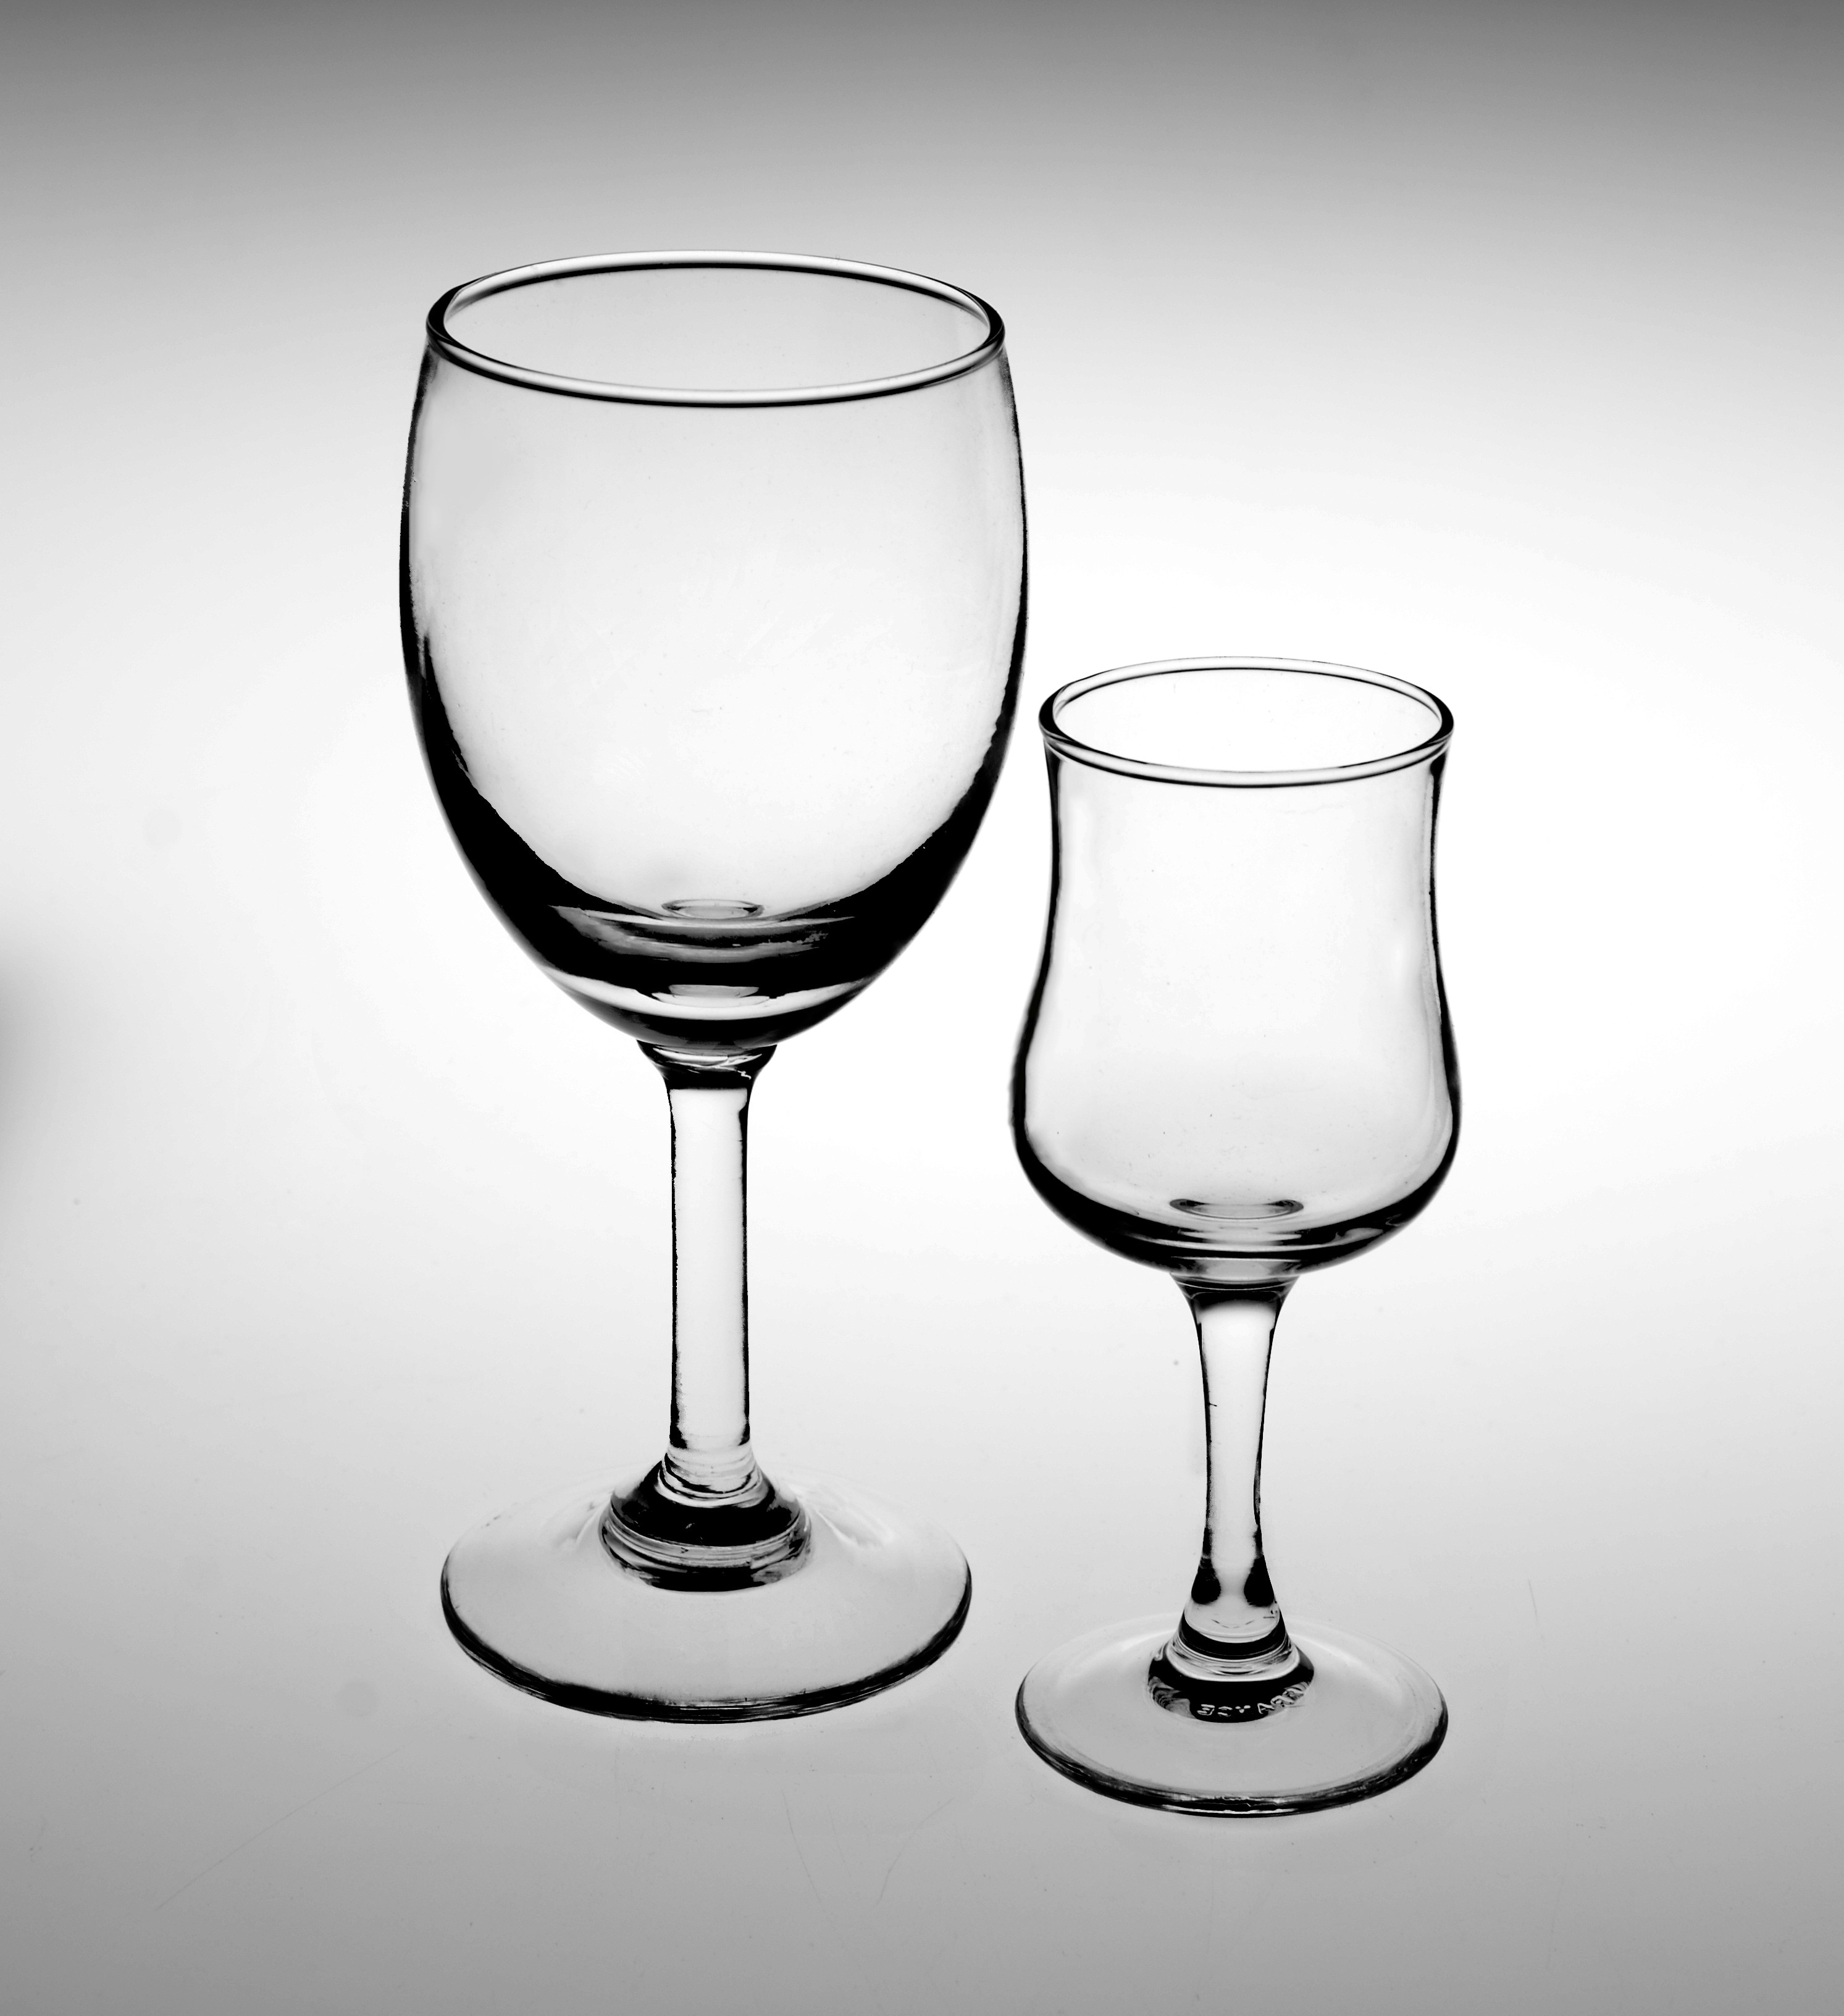 2 clear glass stem glassware